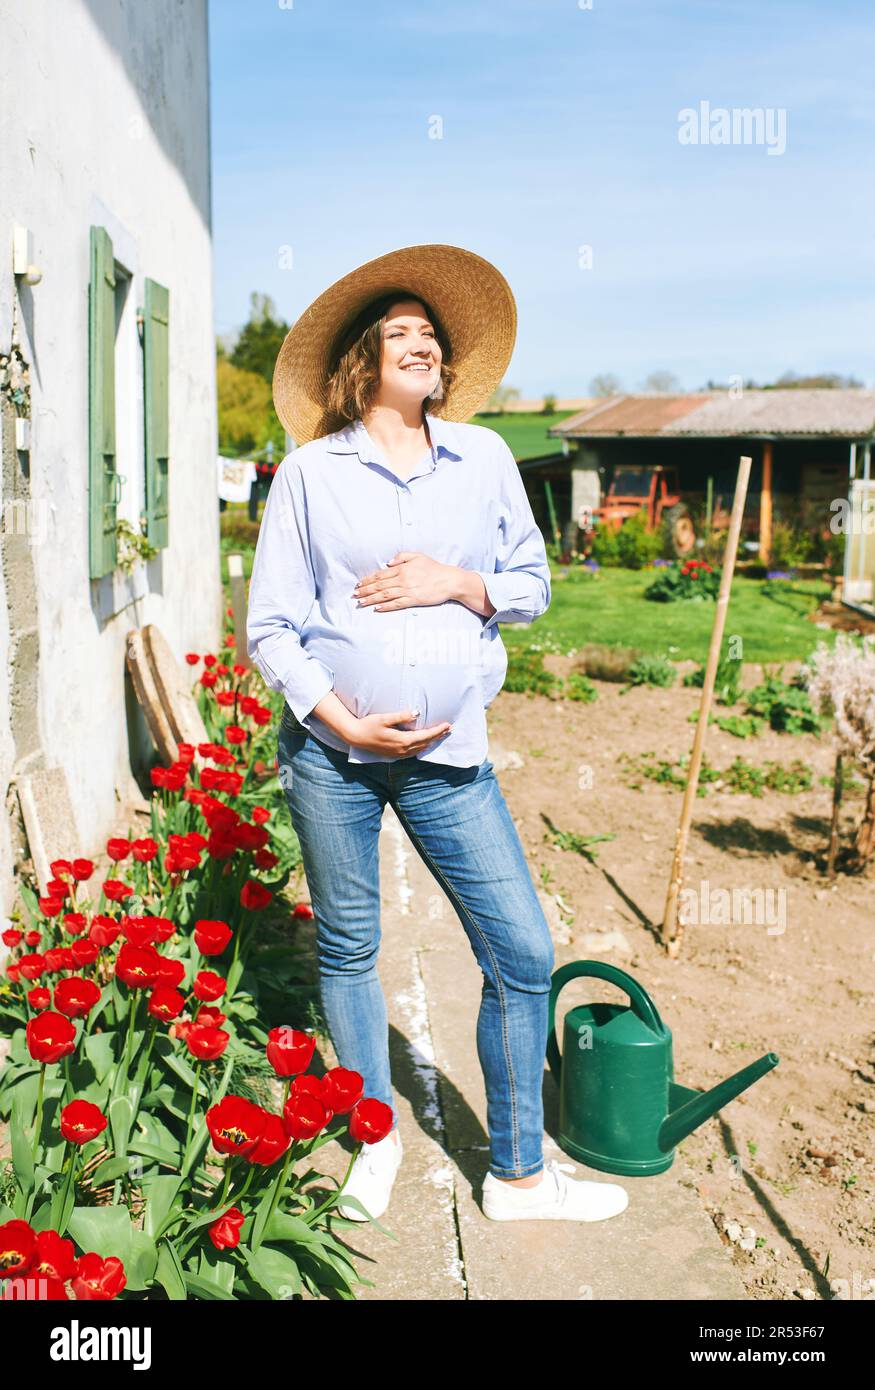 Außenporträt einer glücklichen jungen schwangeren Frau, die einen schönen sonnigen Tag auf dem Land genießt Stockfoto